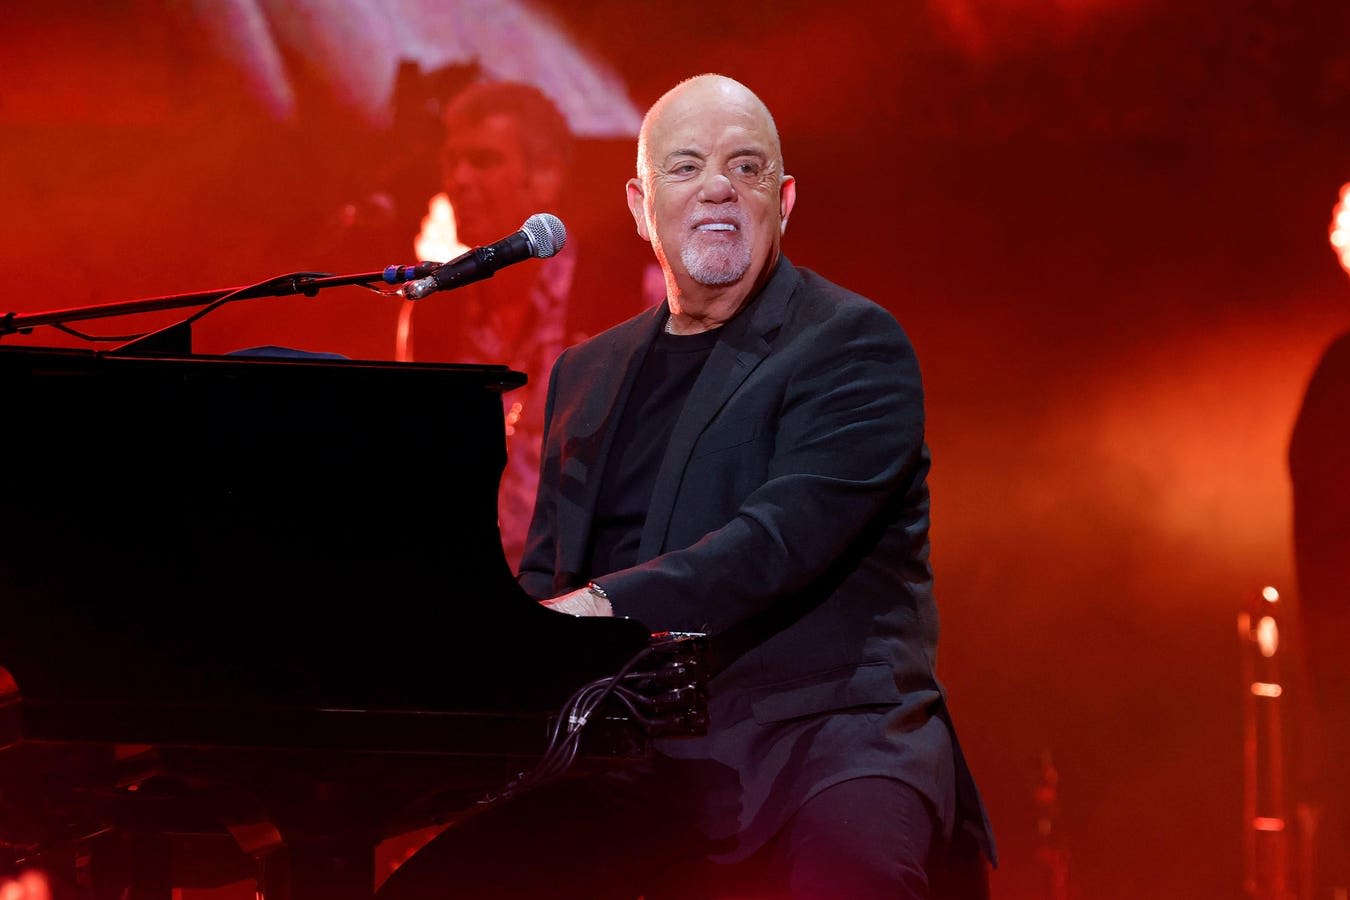 Billy Joel At 75: Piano Man’s Top 5 Ballads Ranked